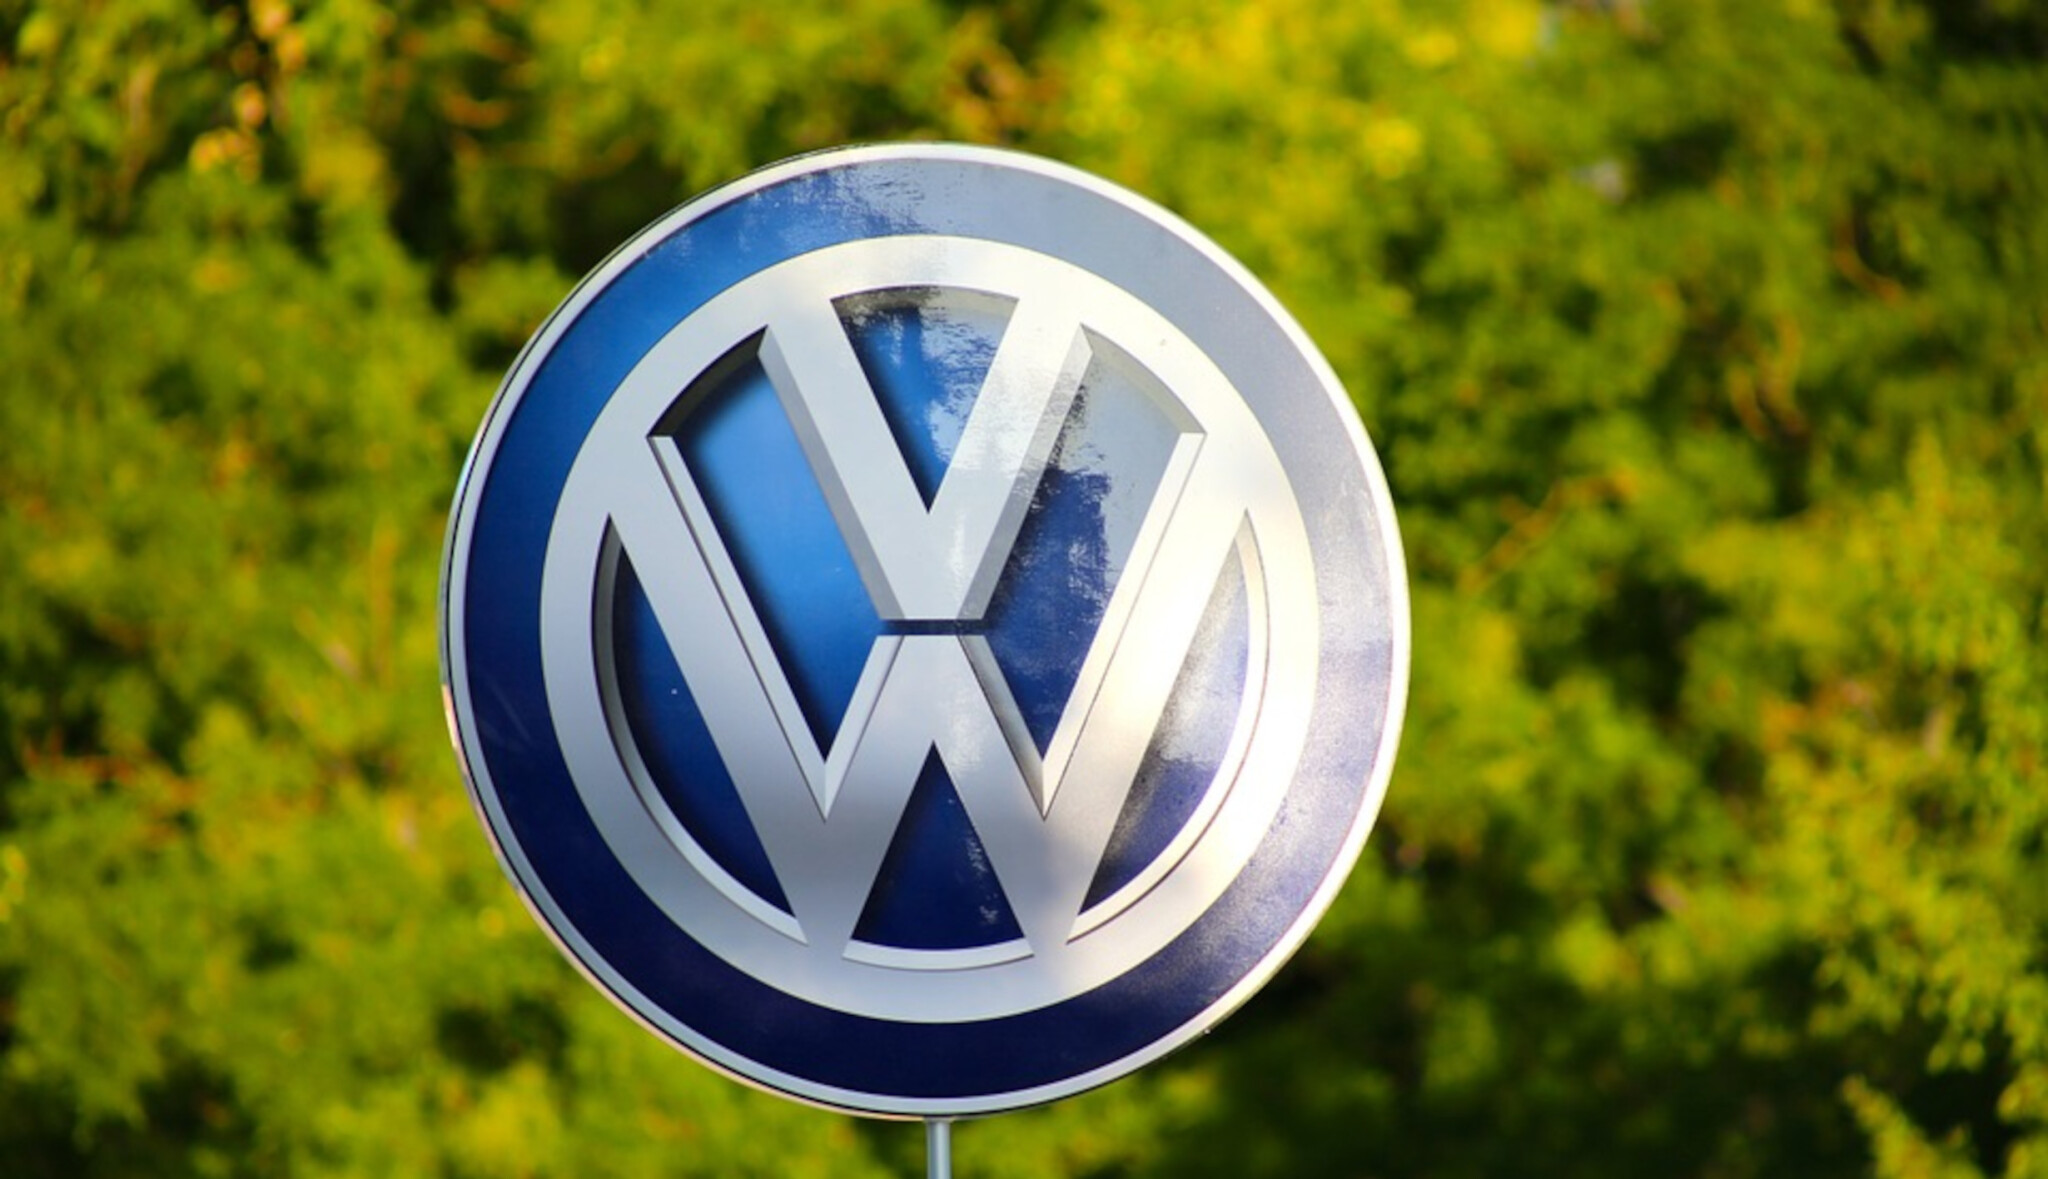 Na desetiletém minimu. Odbyt koncernu Volkswagen se loni propadl o 4,5 procenta